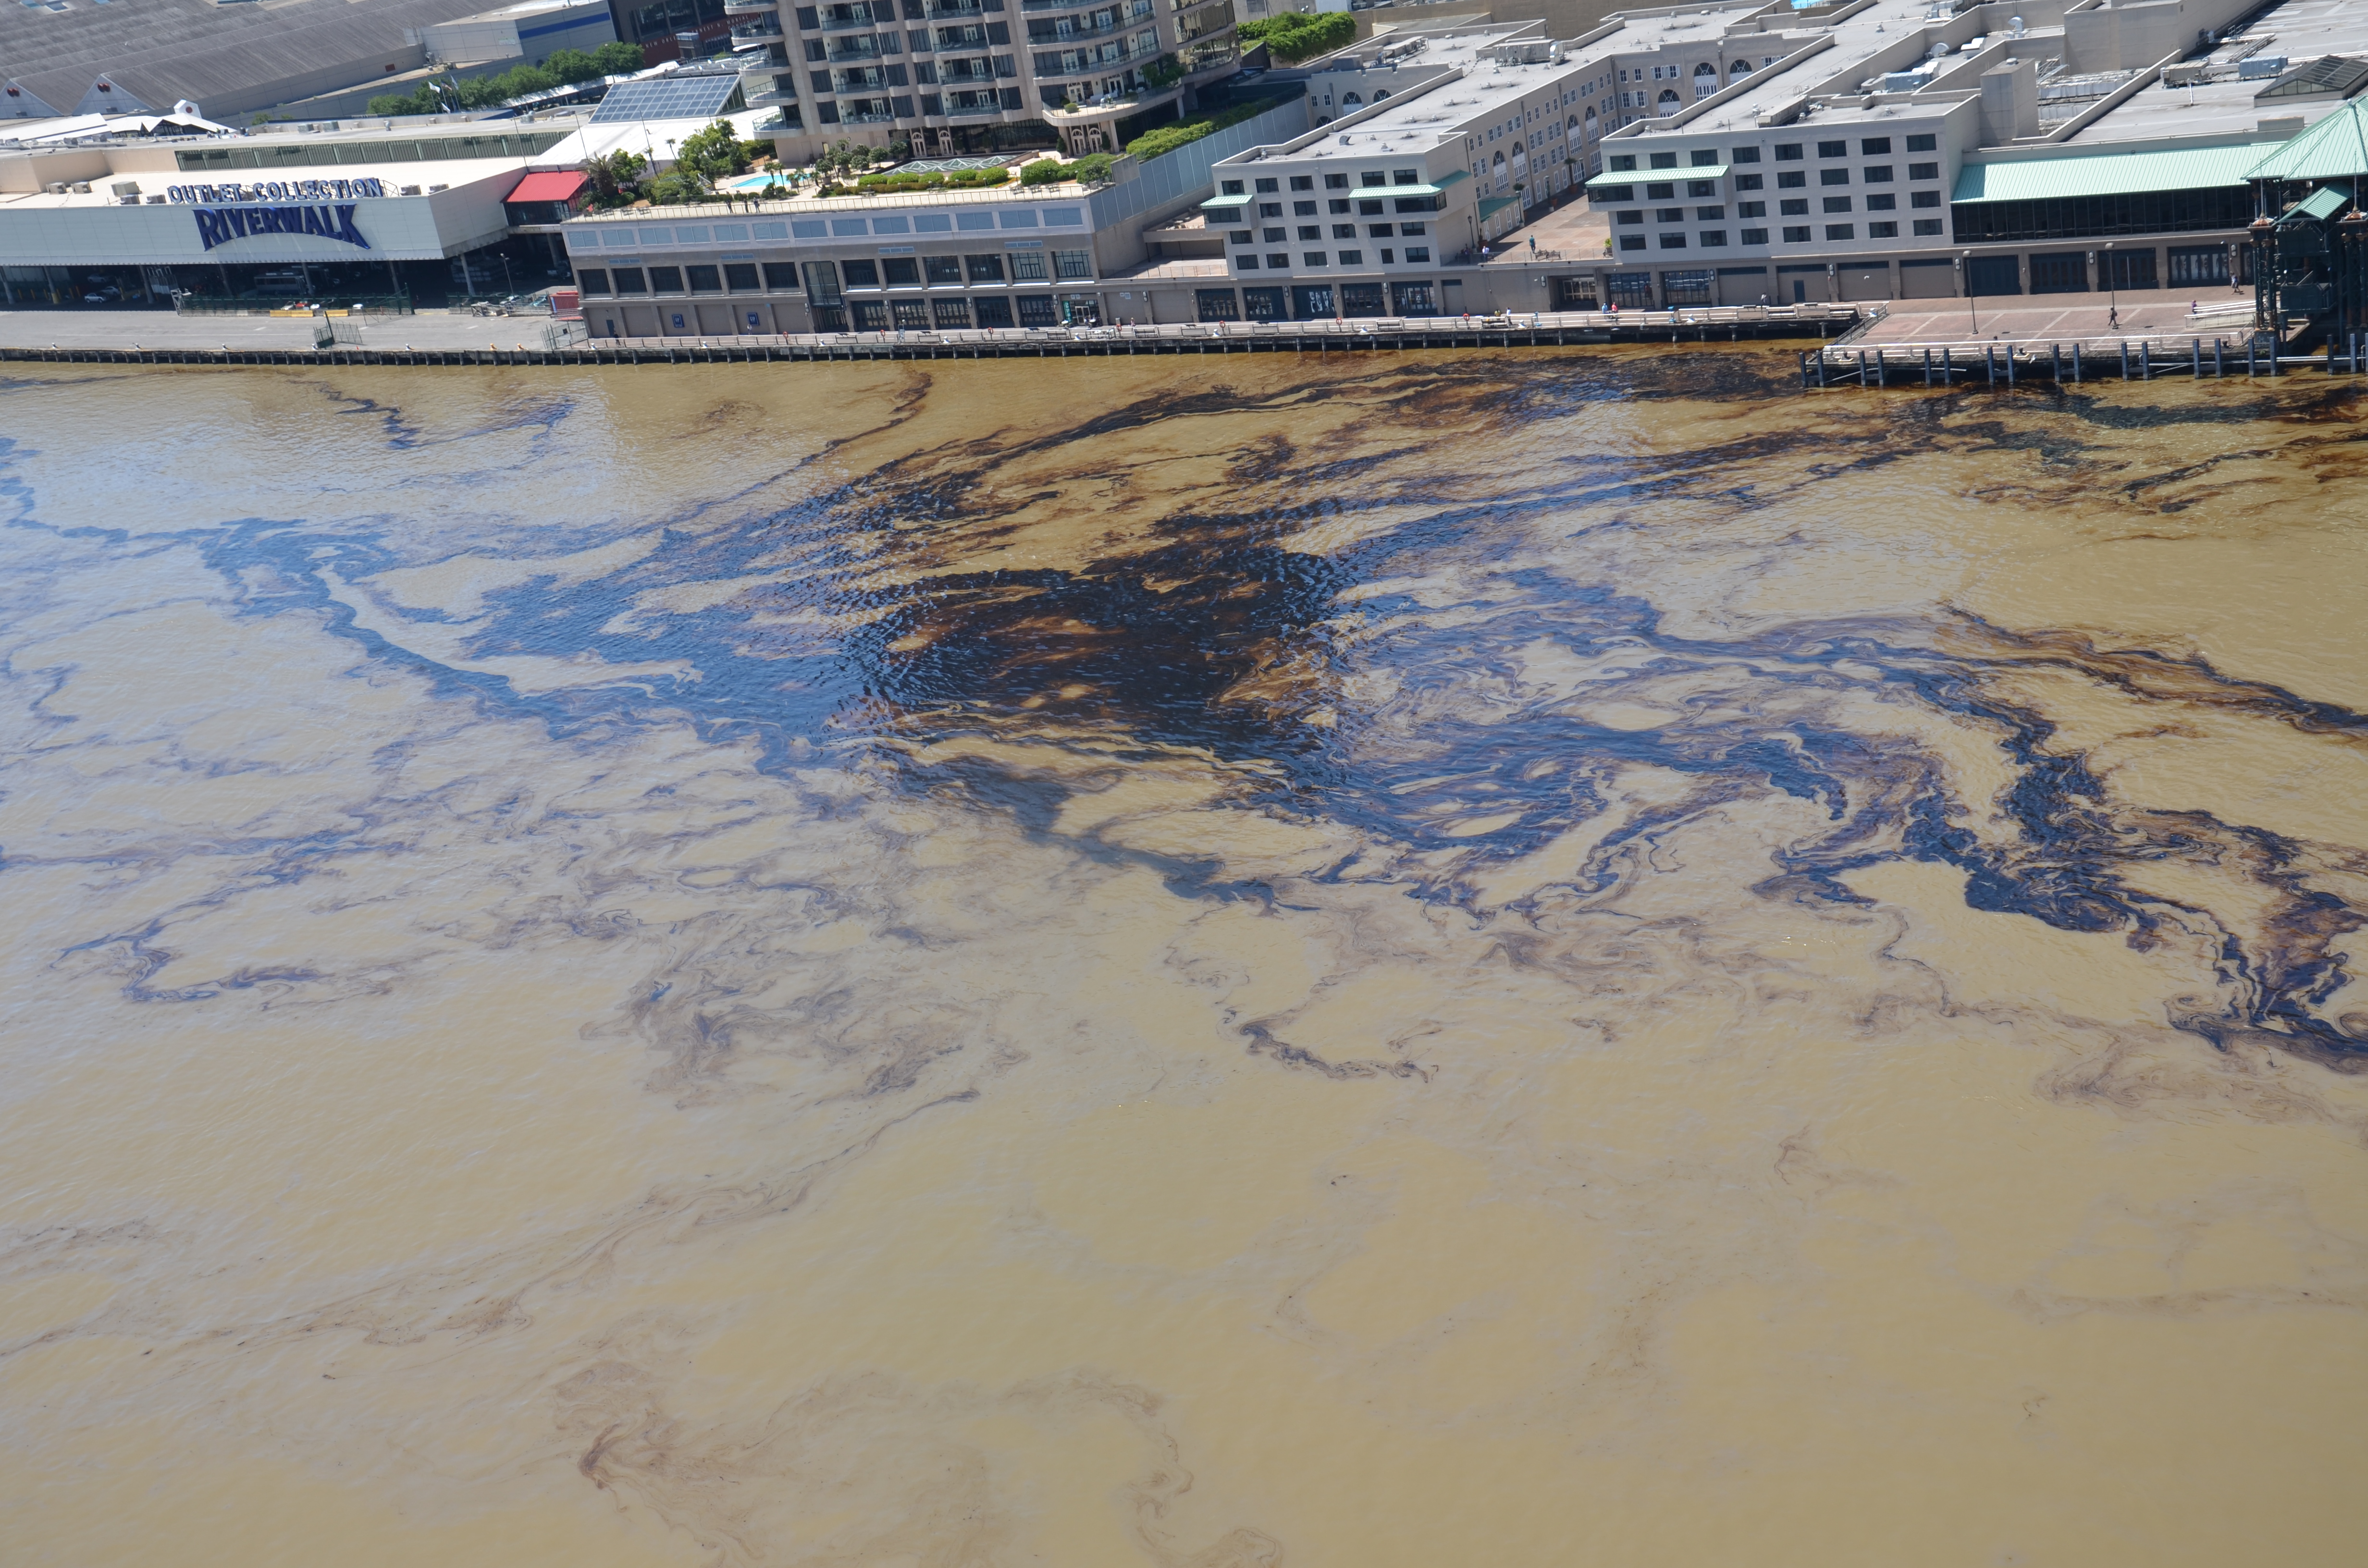 Oil in water along an urban shoreline.